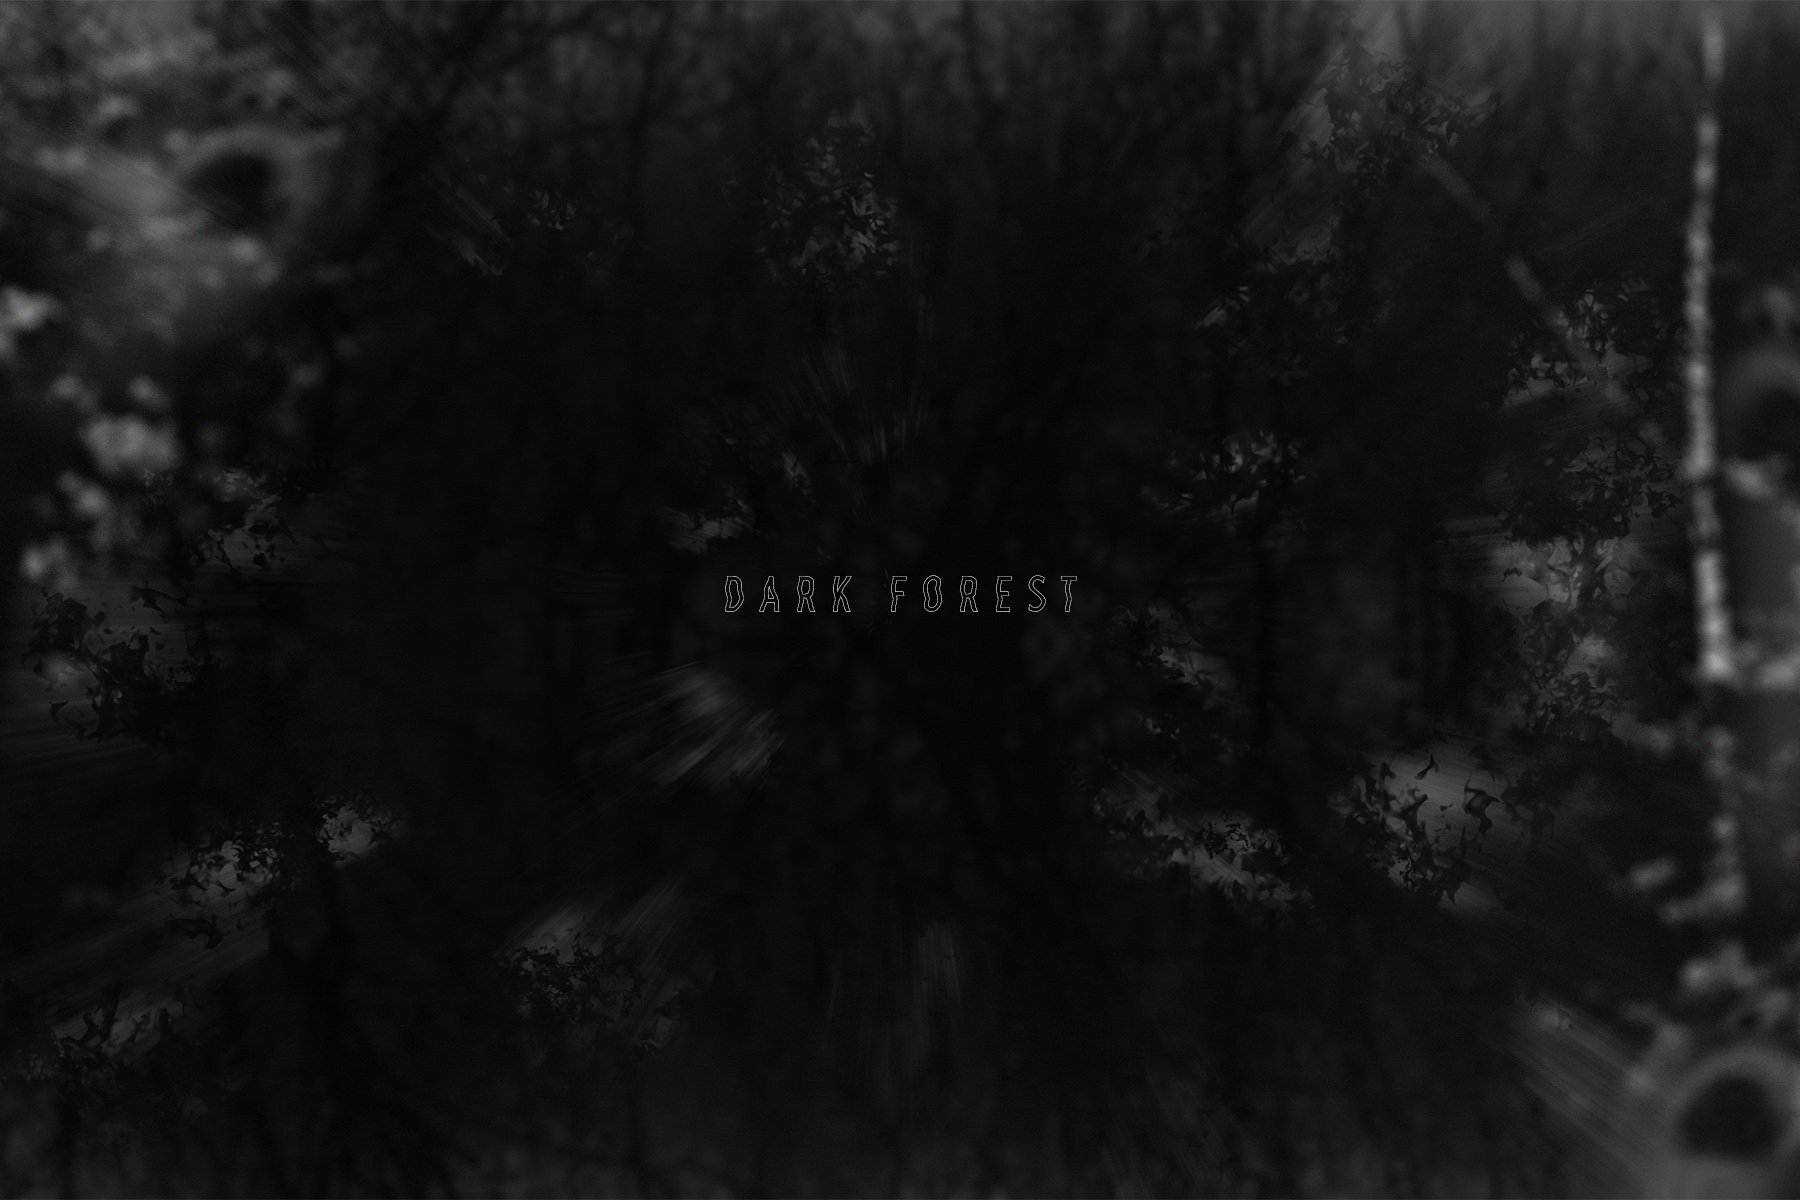 Dark forrest.